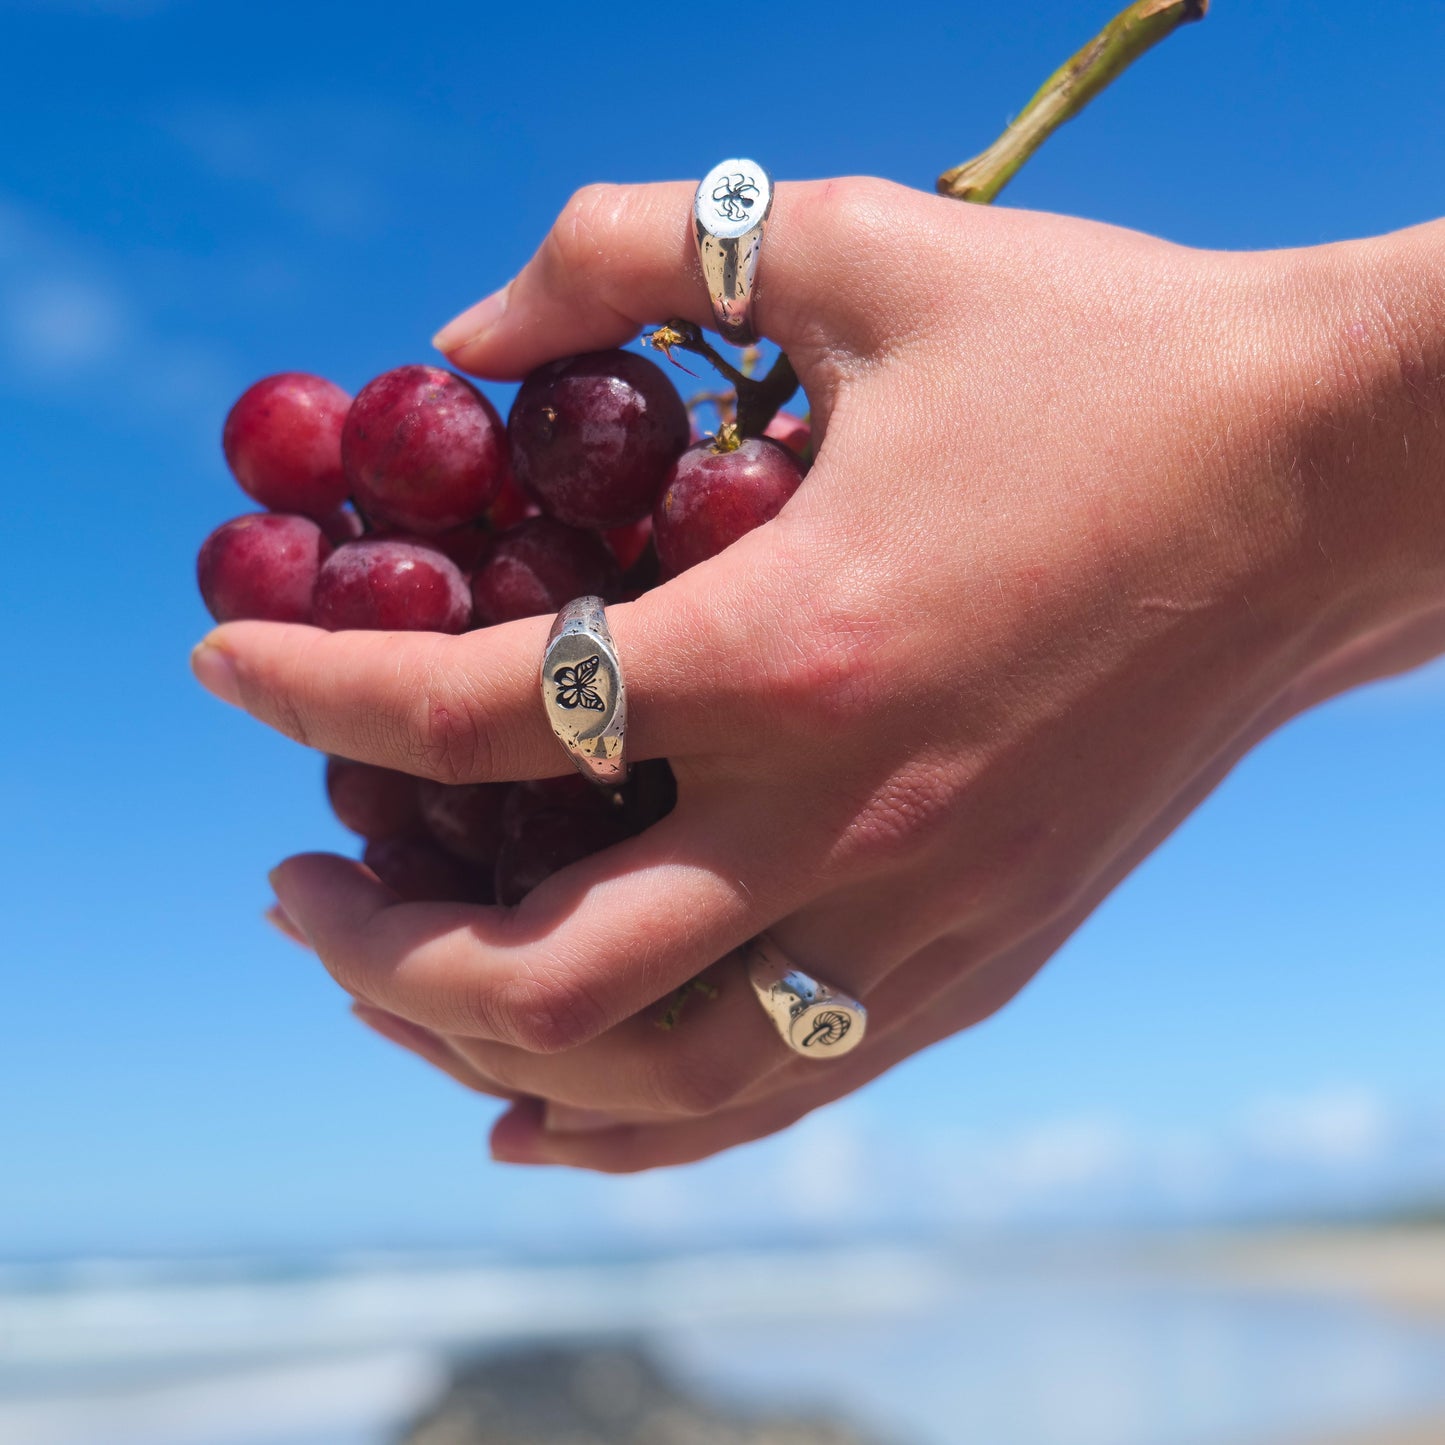 Woman holding grapes wearing kraken + butterfly + mushy rings.